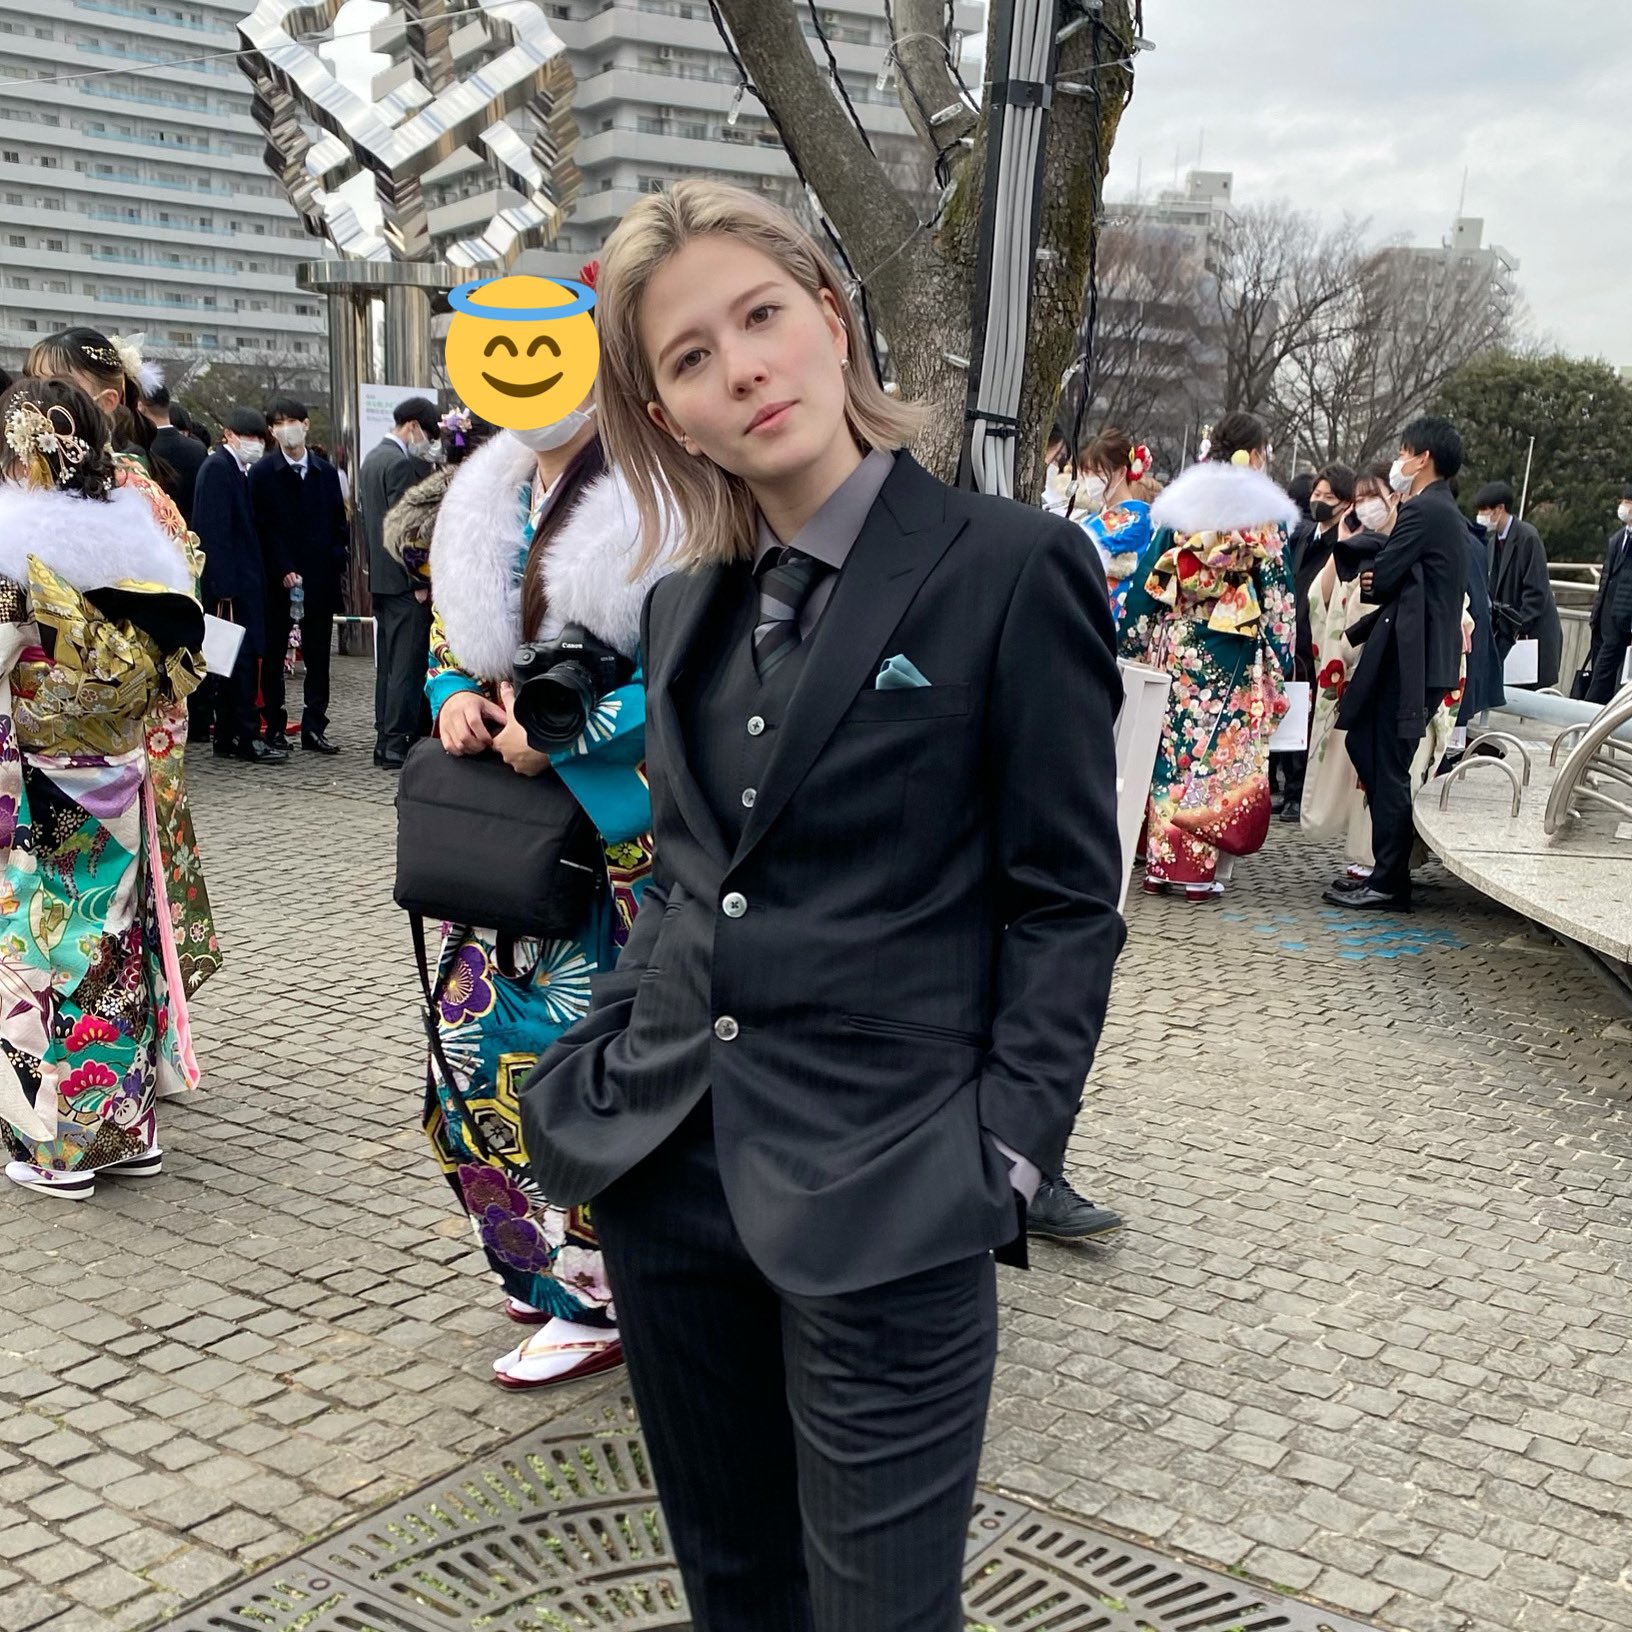 Cô gái Nhật Bản diện suit đen cực ngầu nhân dịp lễ trưởng thành, vẻ đẹp phi giới tính khiến CĐM phát sốt - Ảnh 1.